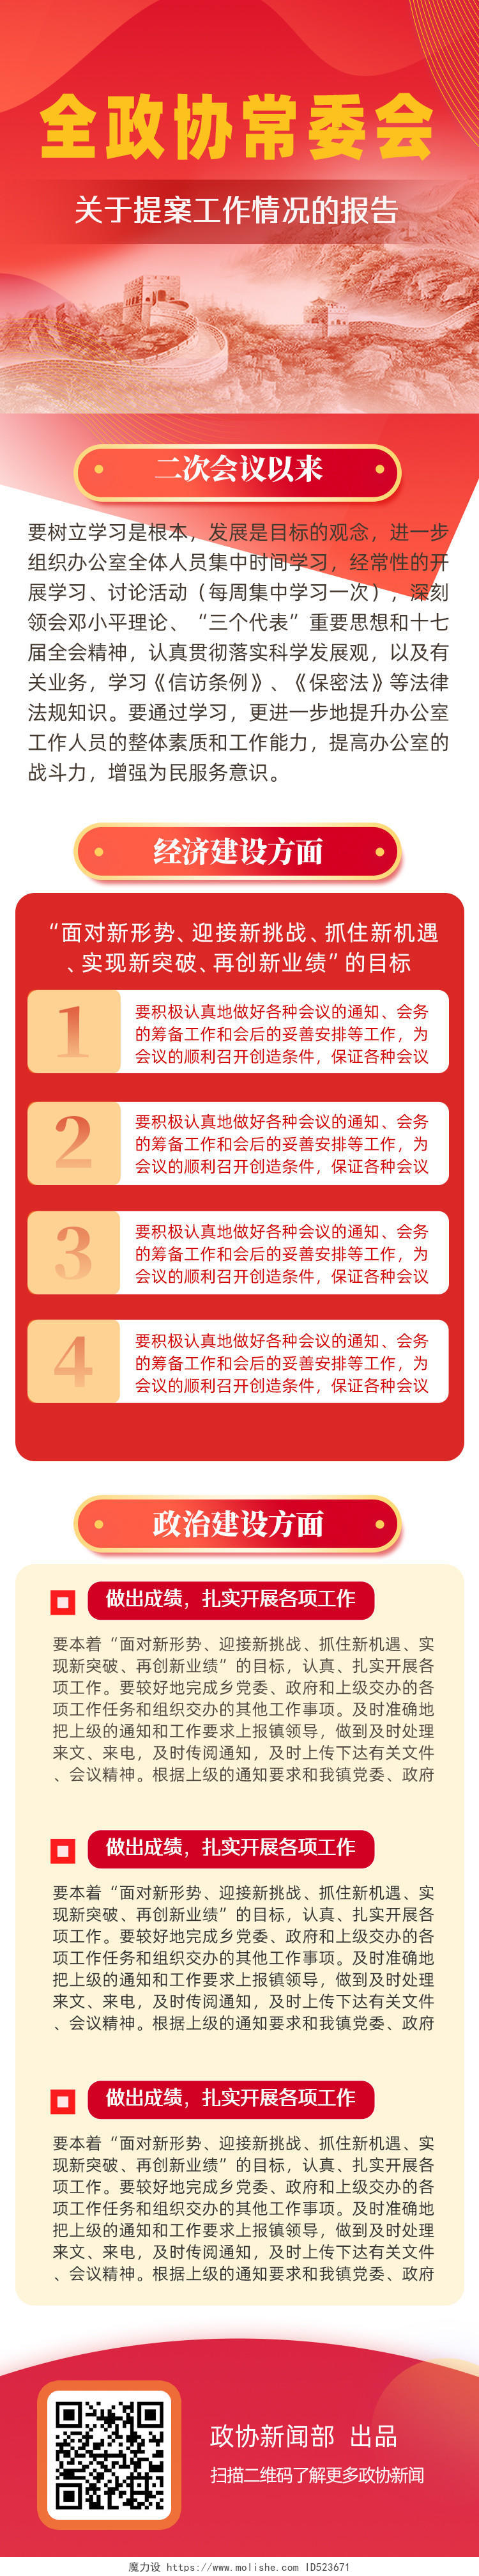 红色简约全政协党委会提案工作报告党建长图UI